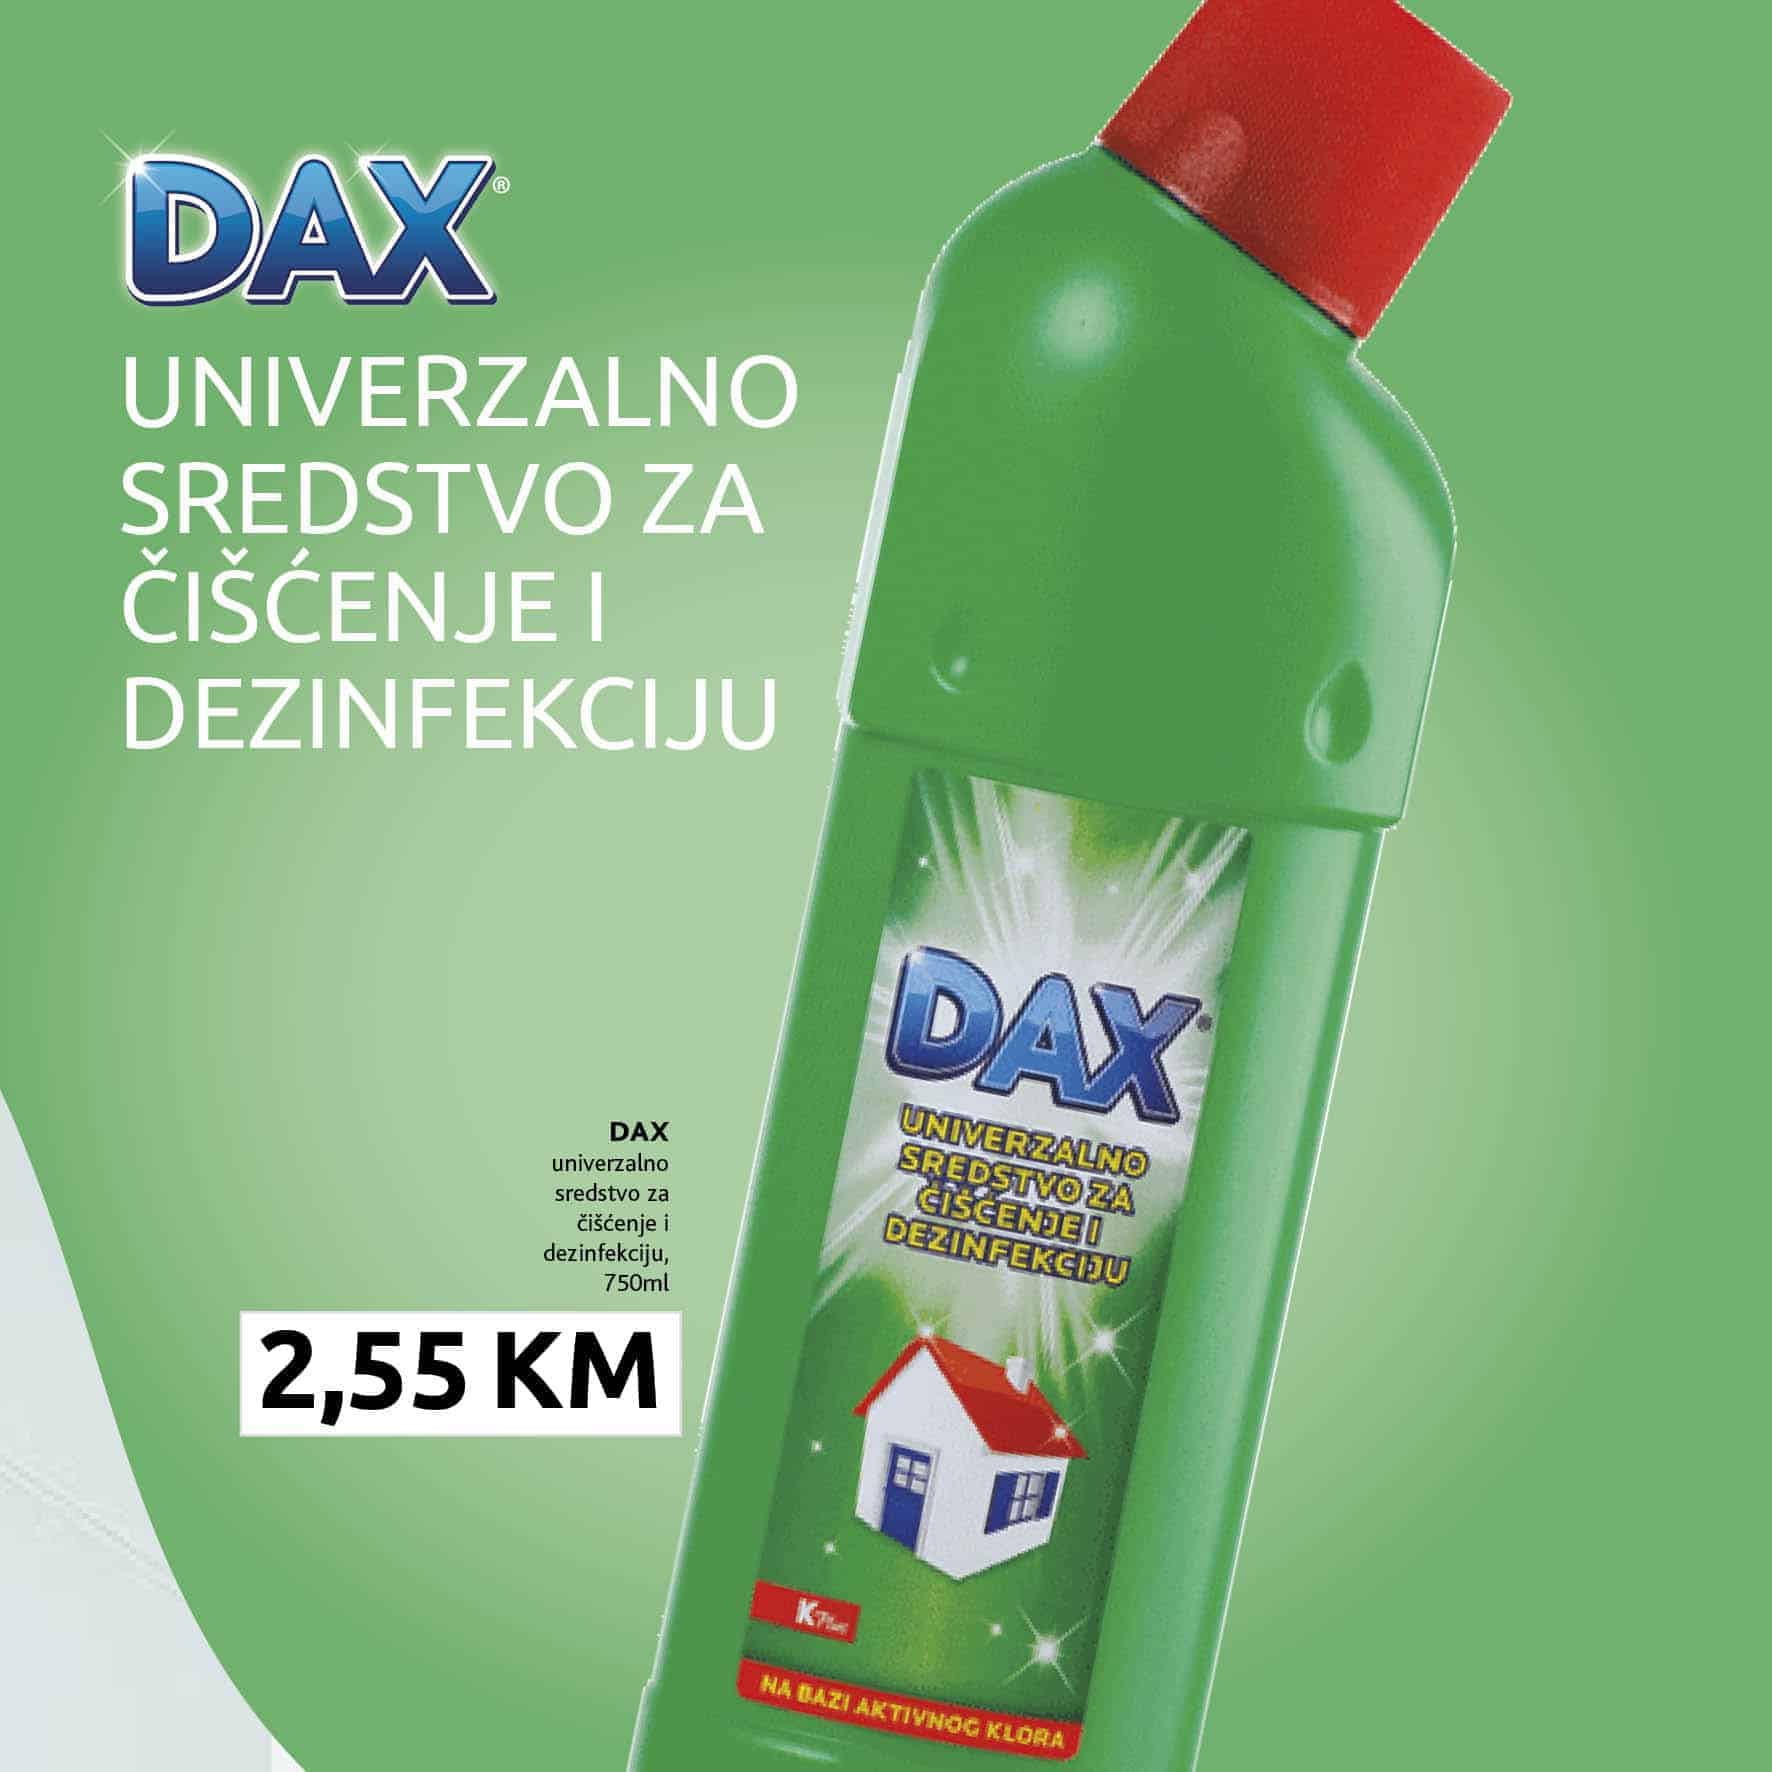 dax univerzalno sredtsvo za ciscenje i dezinfekciju